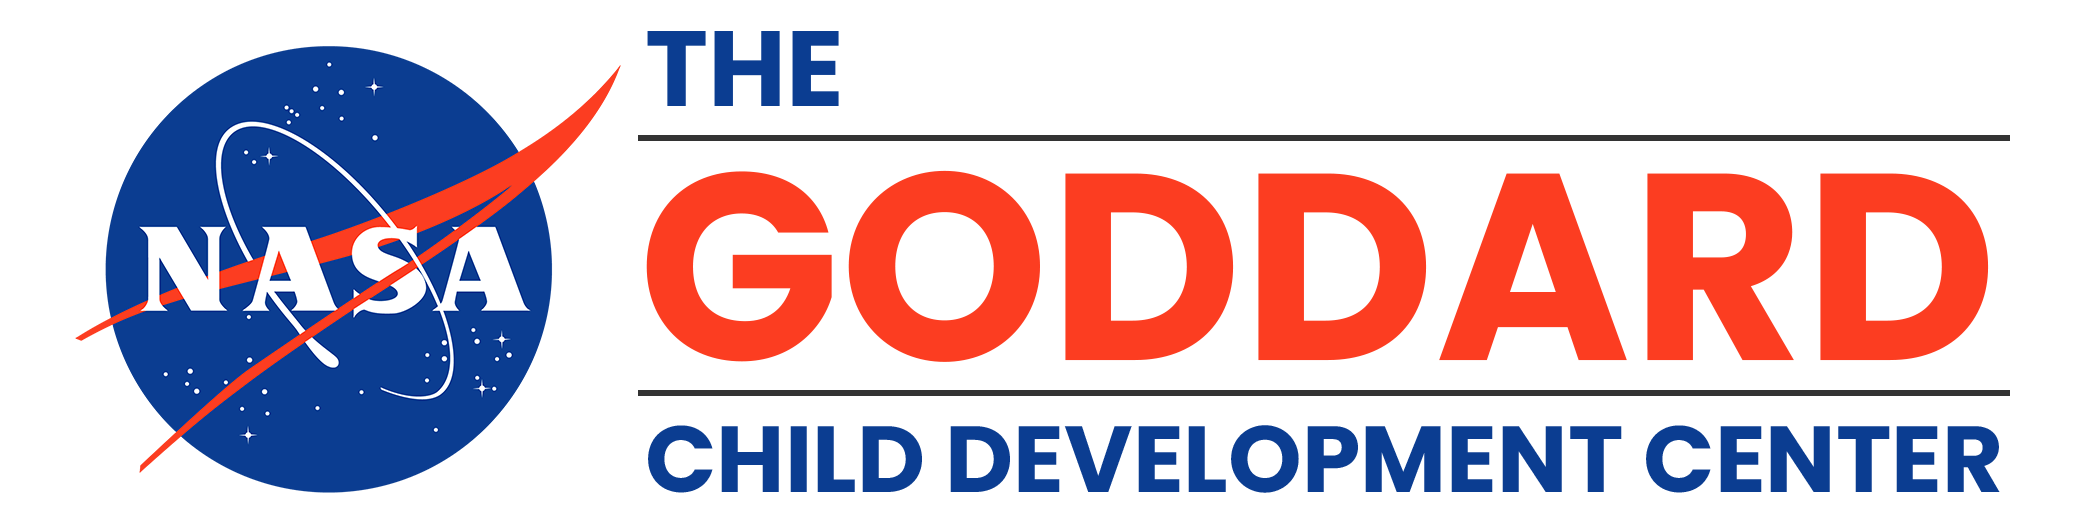 NASA GCDC Goddard Child Development Center